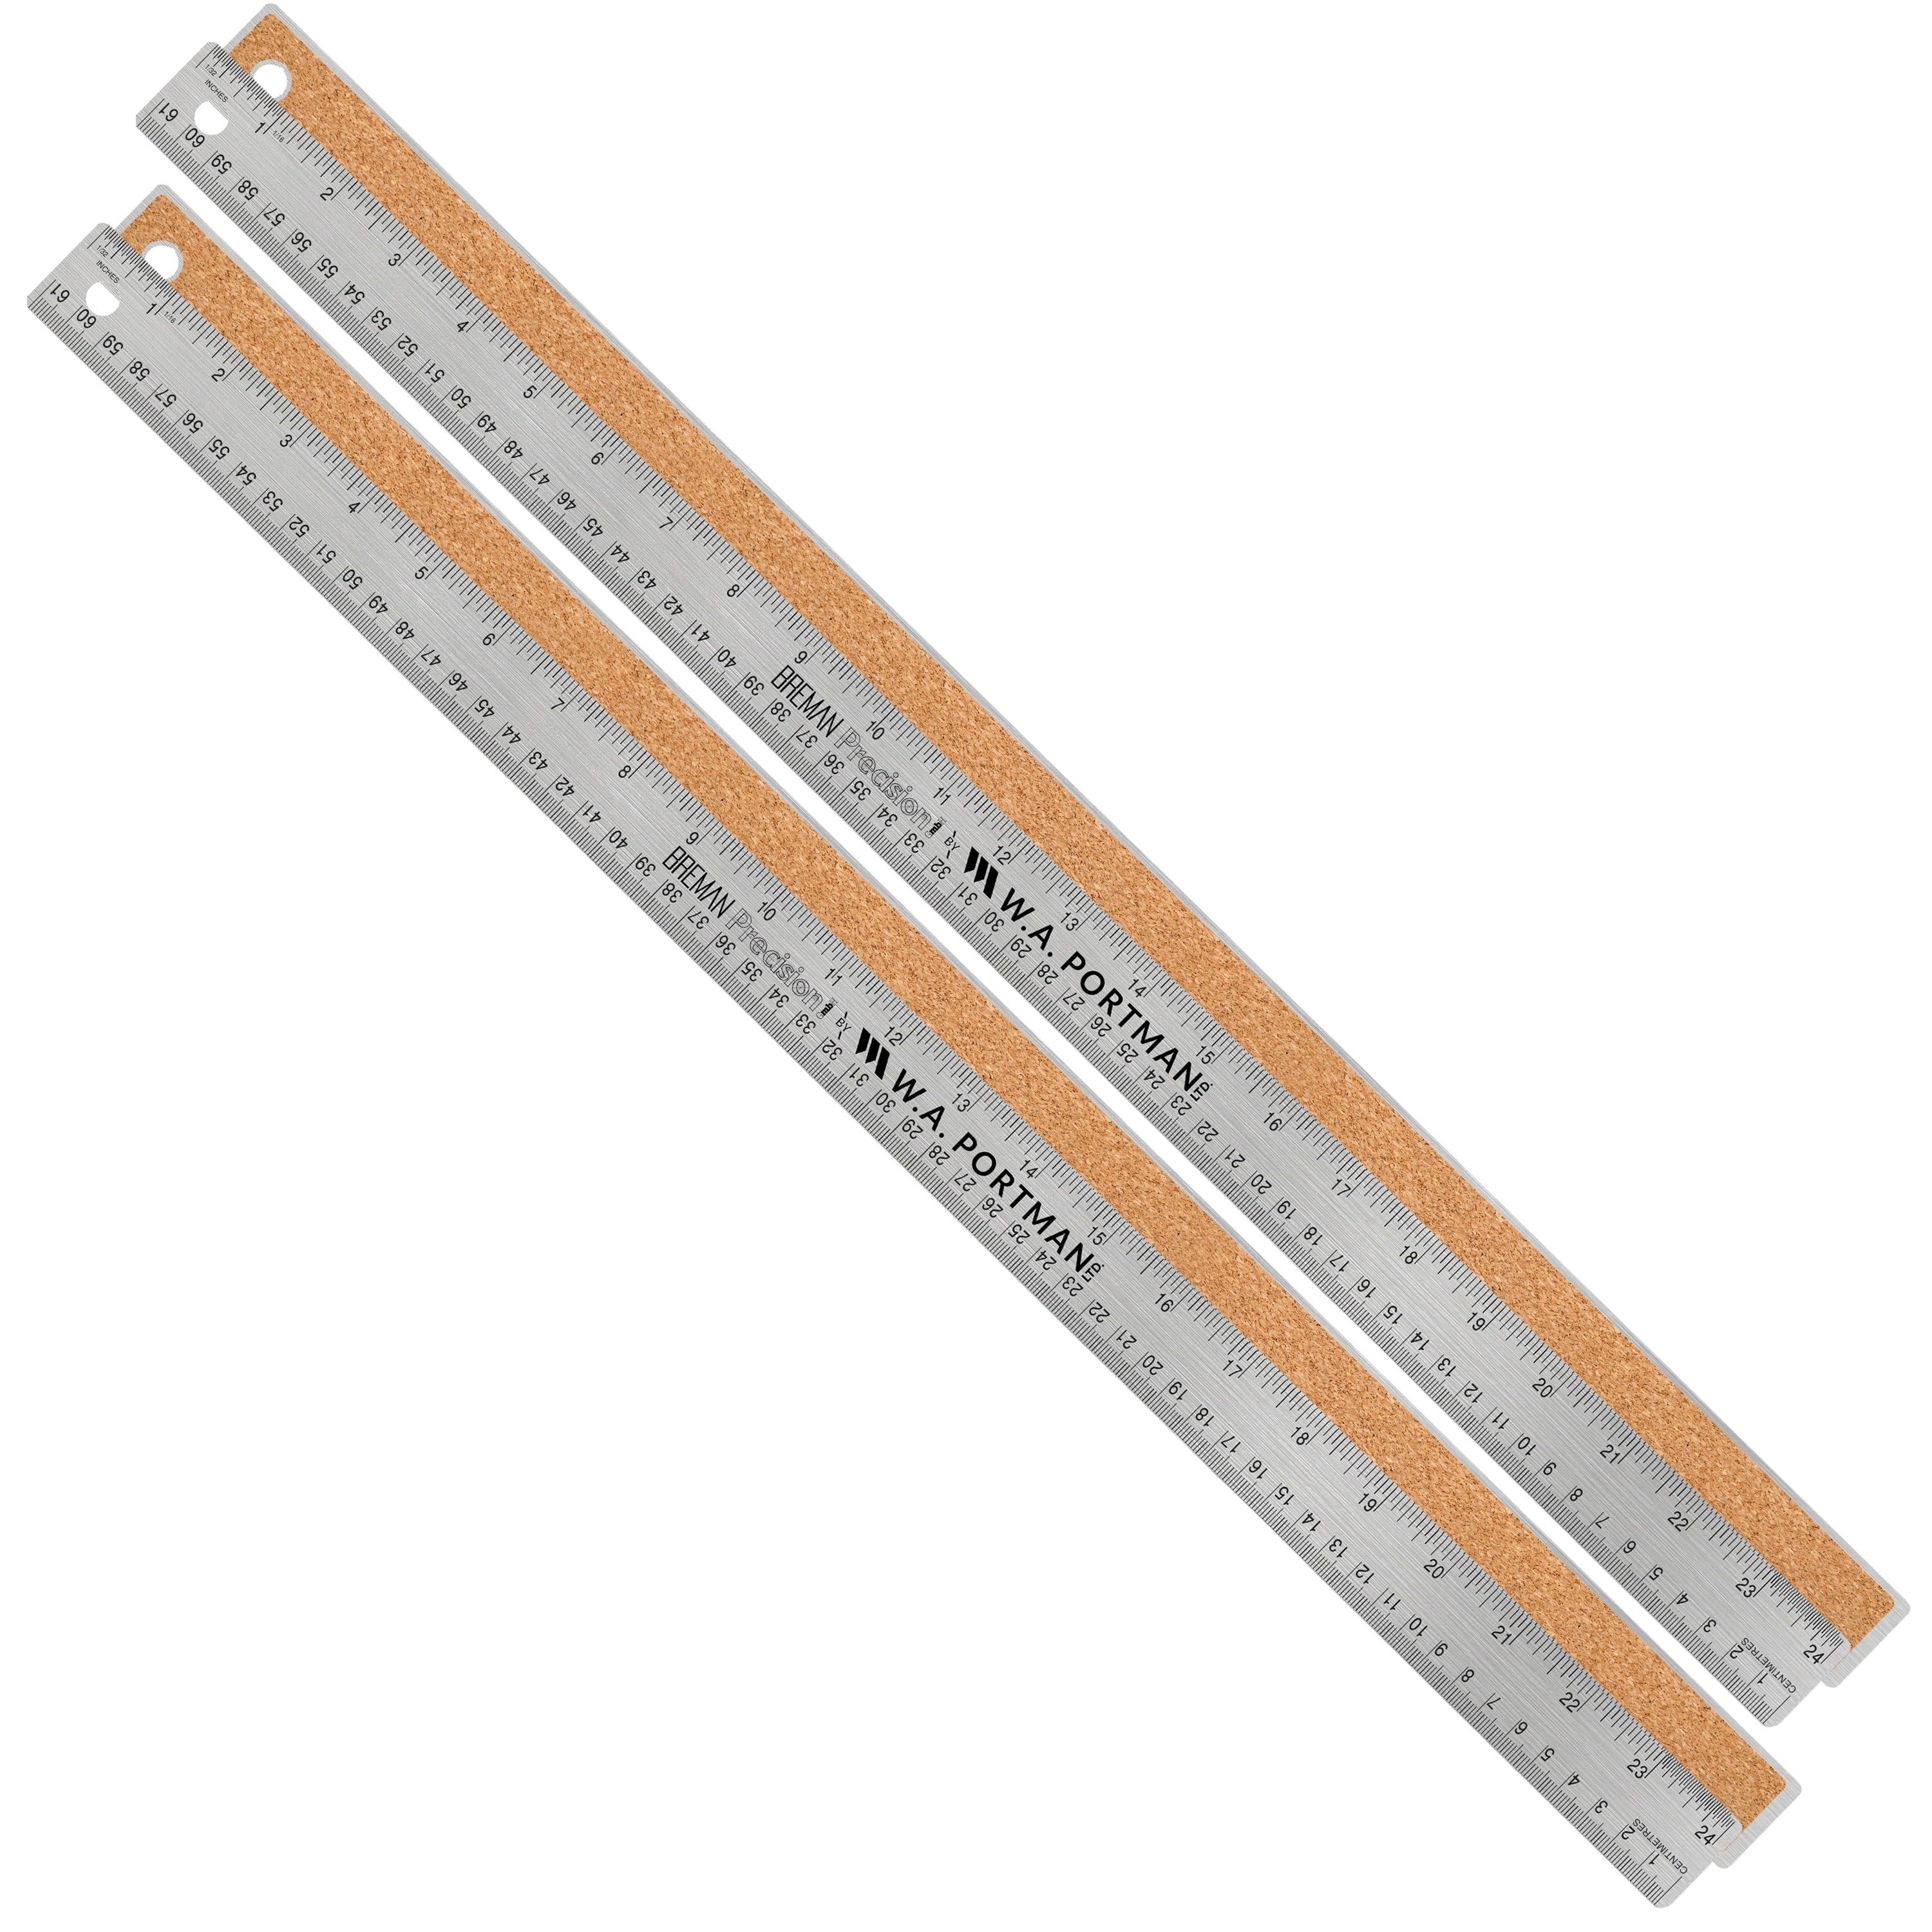 Stainless Steel Metal Flexible Ruler - 6 Inch - Pack of 2 - Metal